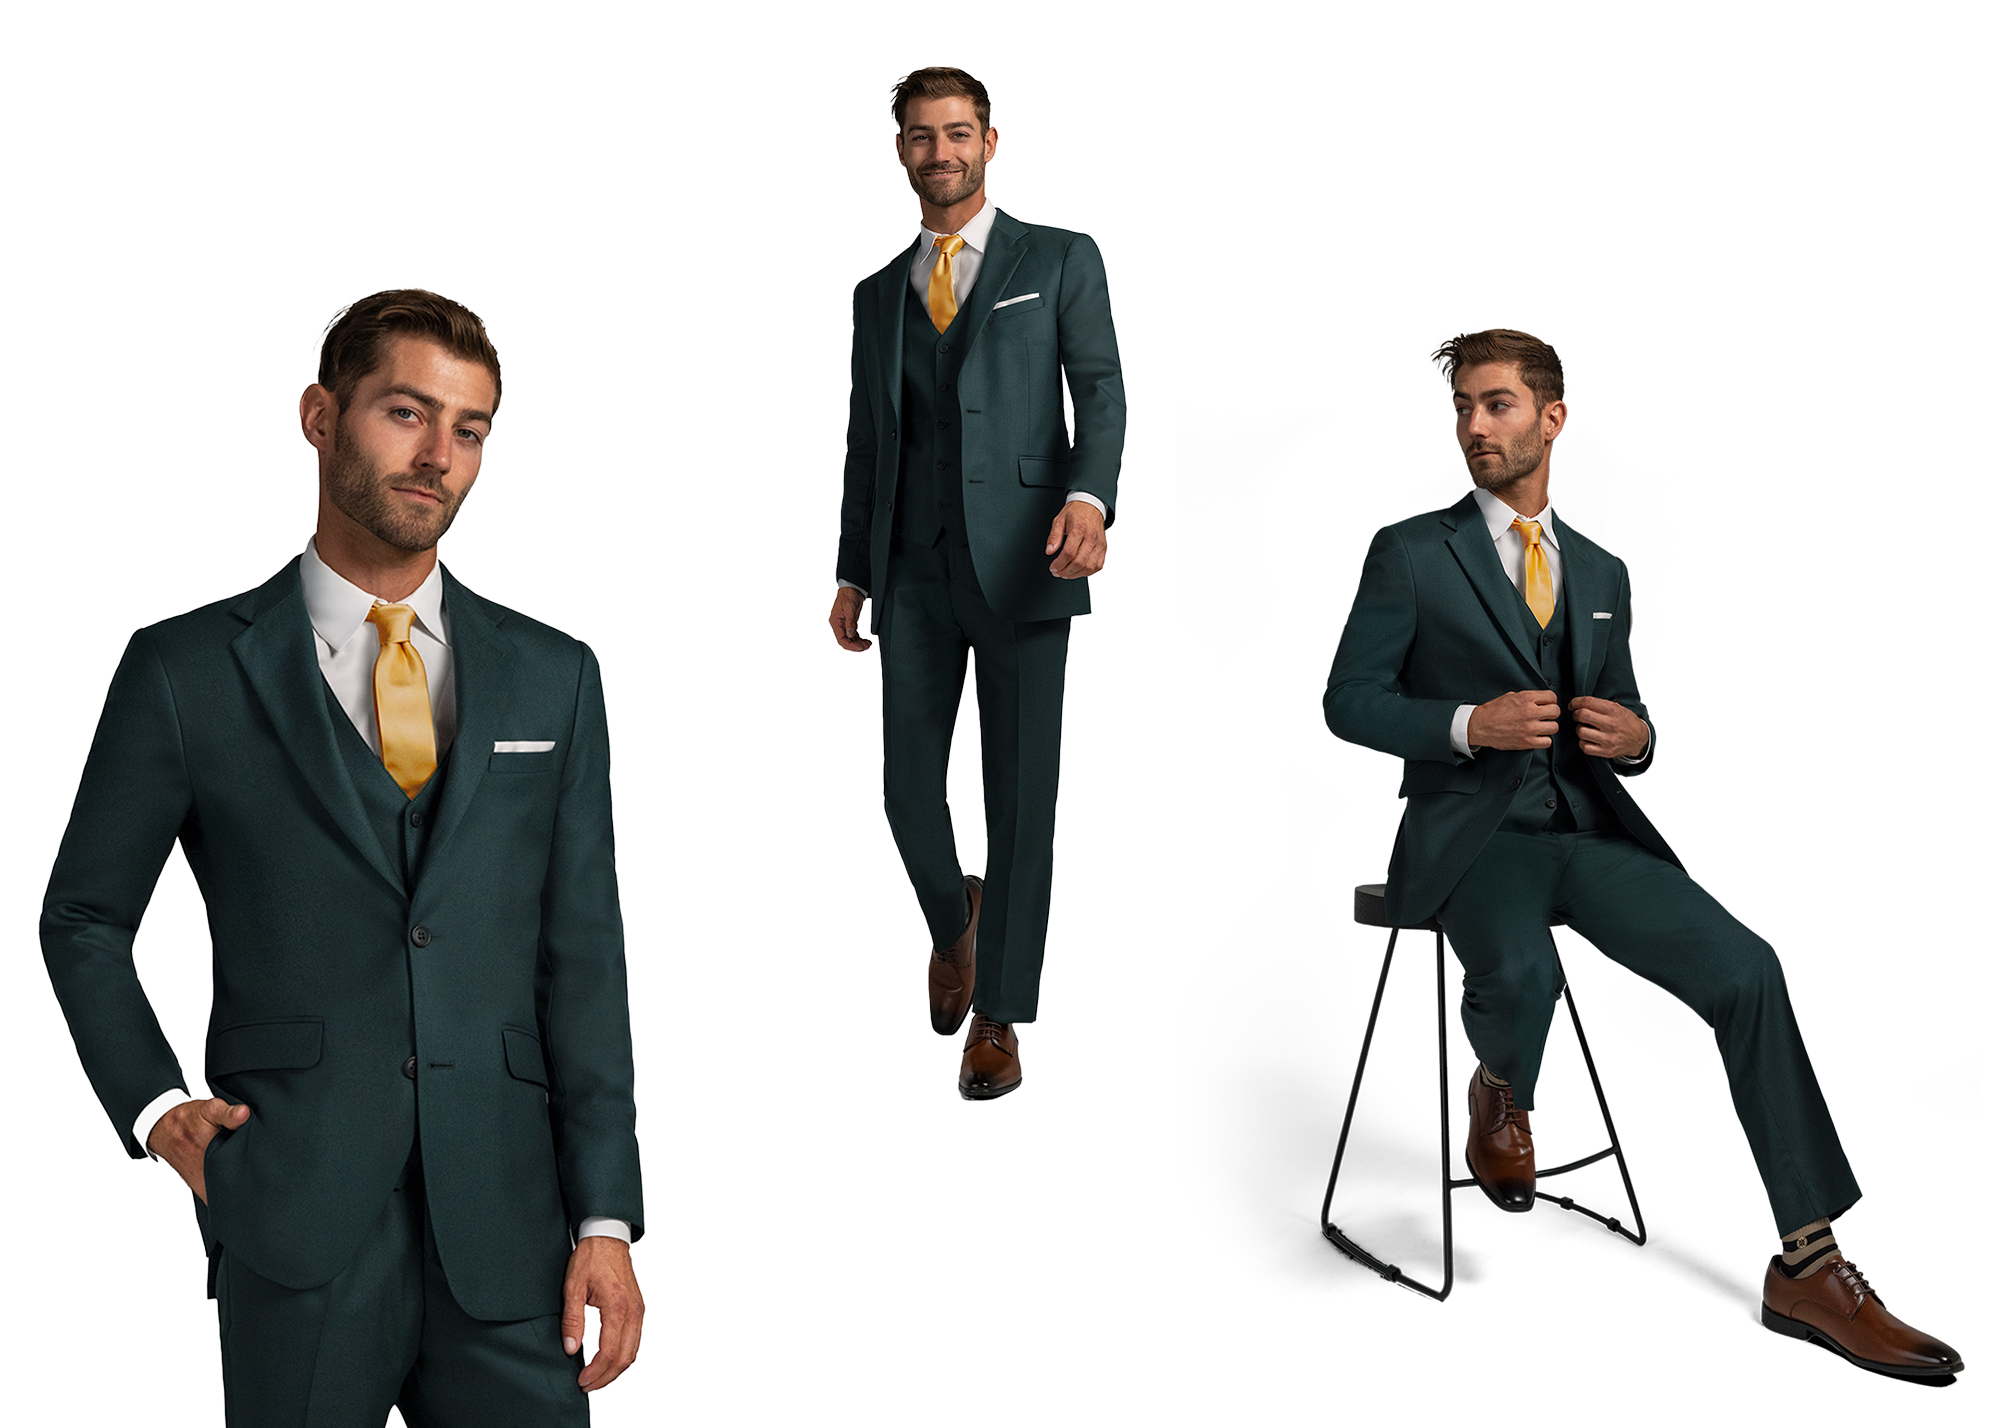 Men's Green Notch Lapel 3-piece Suit Unique Formal & Business Wear